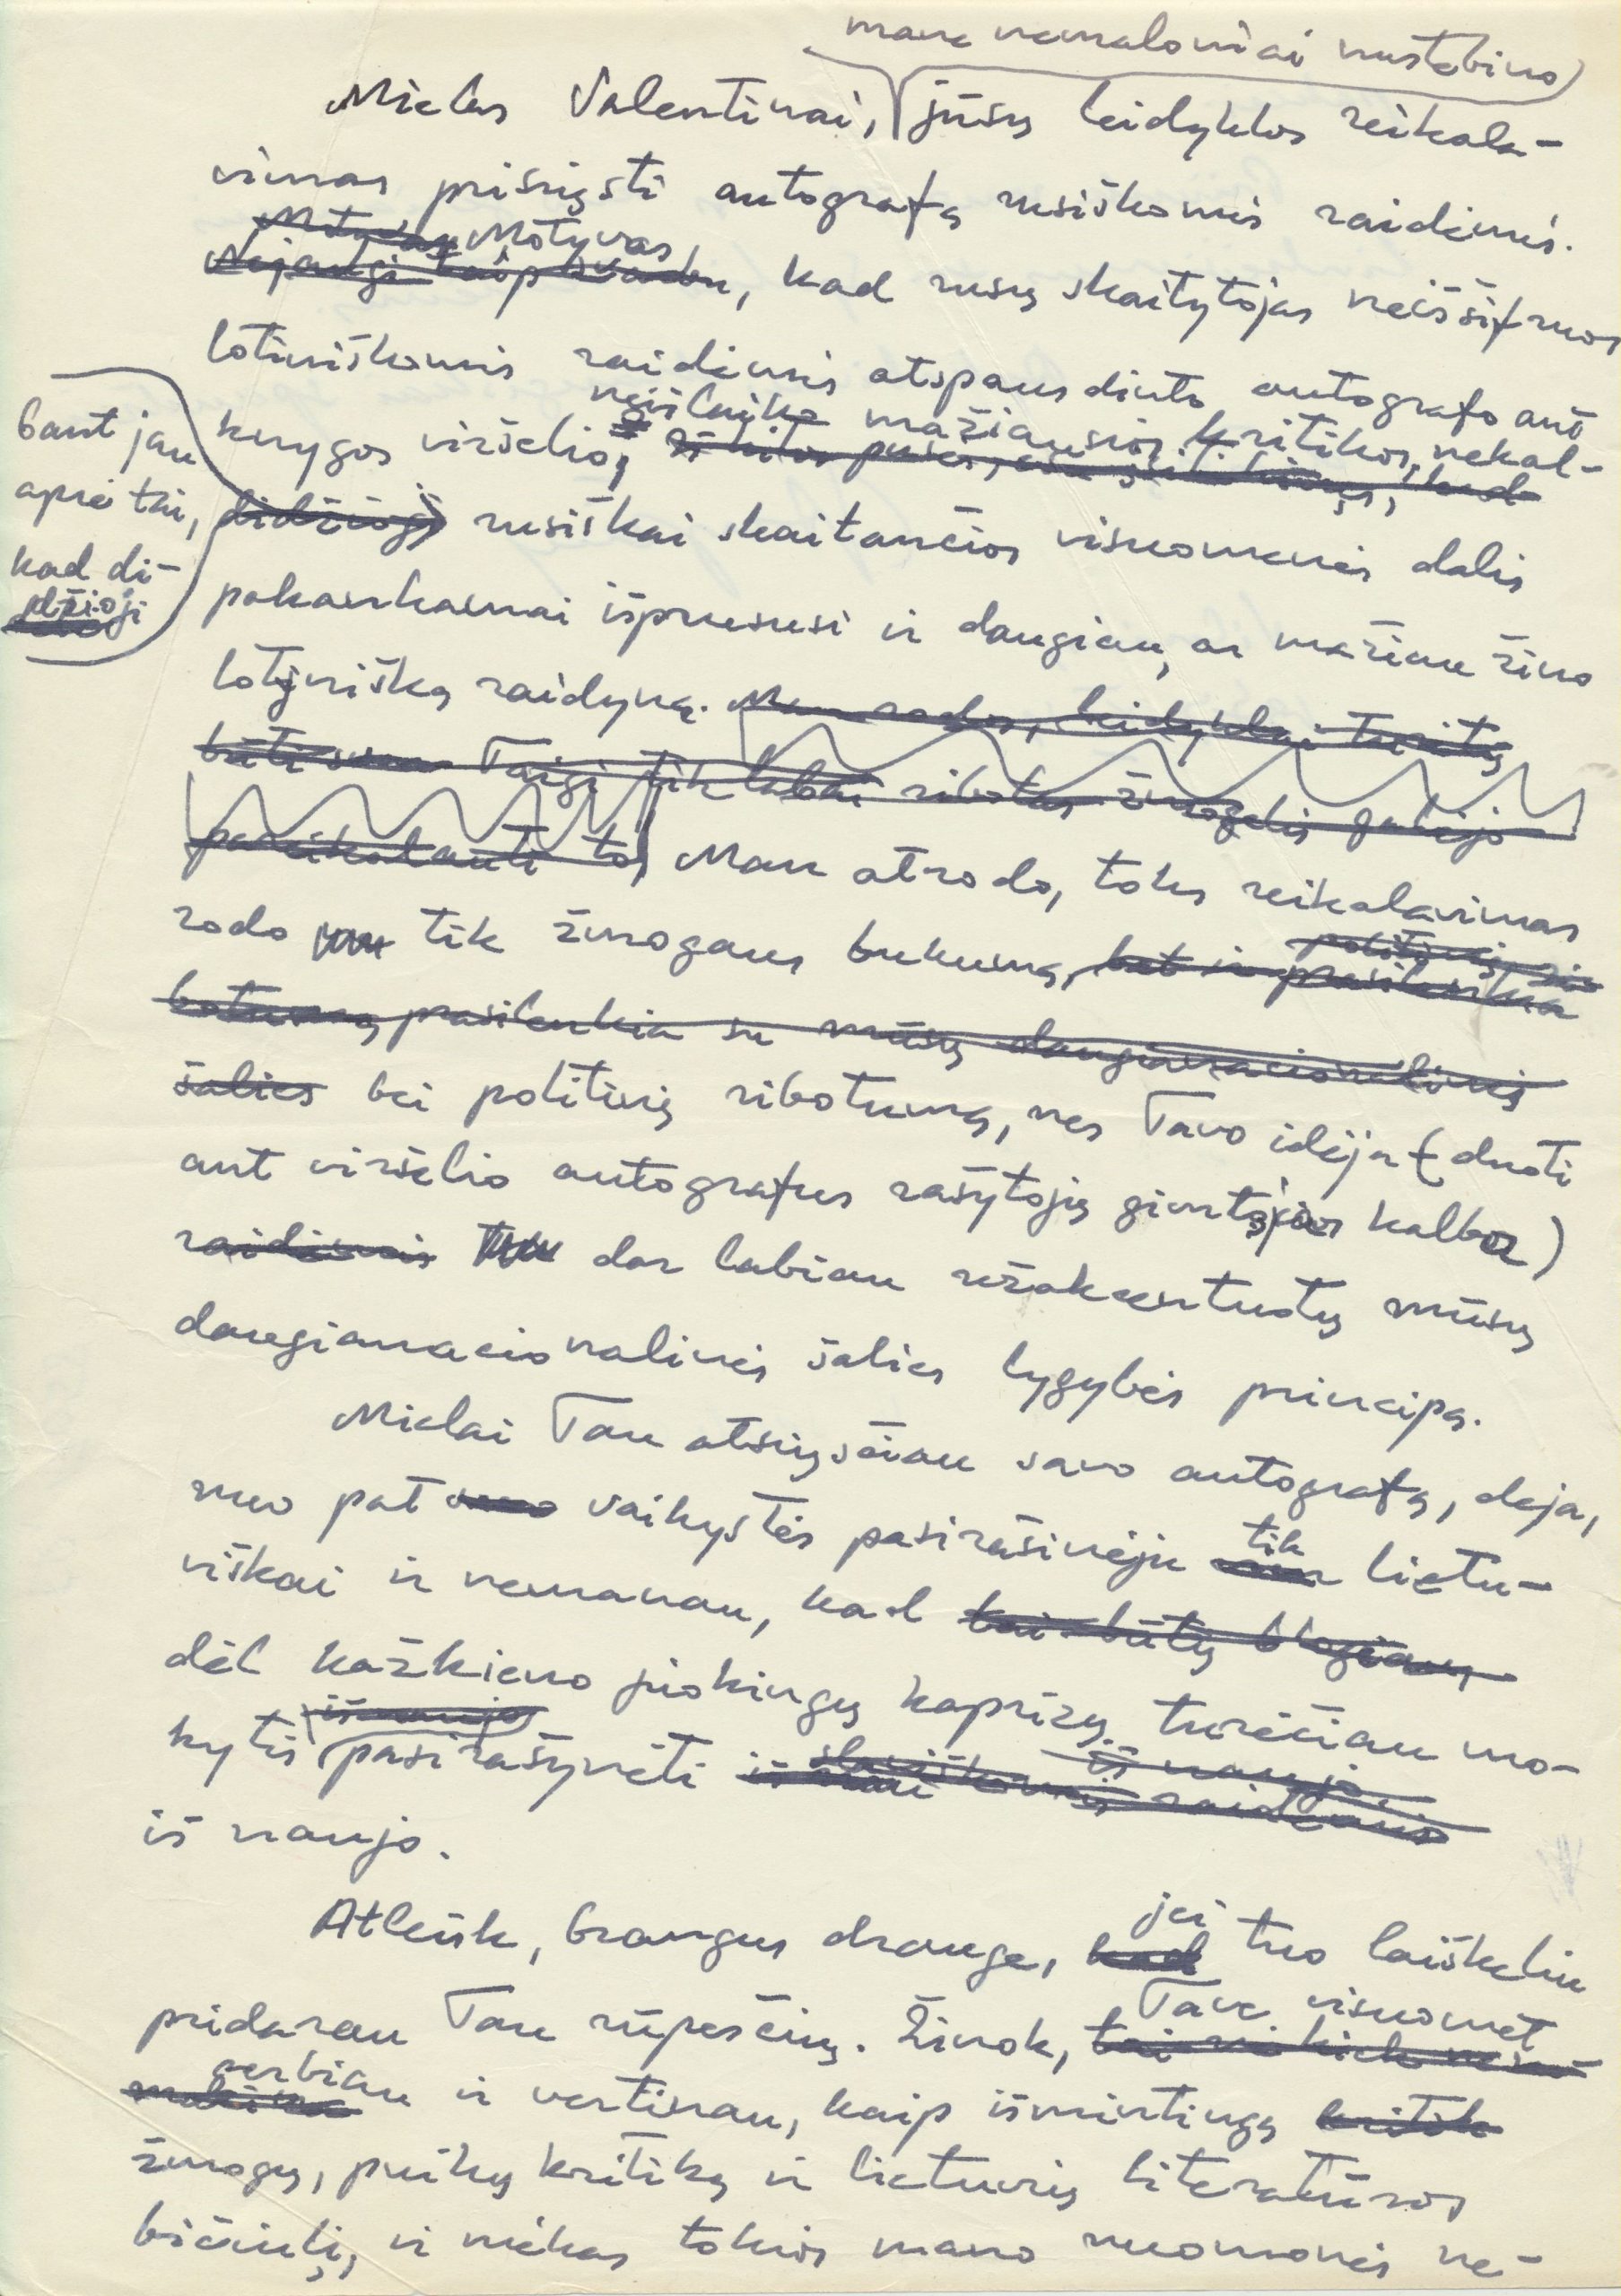 J. Avyžiaus laiško V. Sventickui juodraštis, kuriame jis atsisako pasiųsti autografą rusiškomis raidėmis. Vilnius, 1977 11 04. MLLM 96529